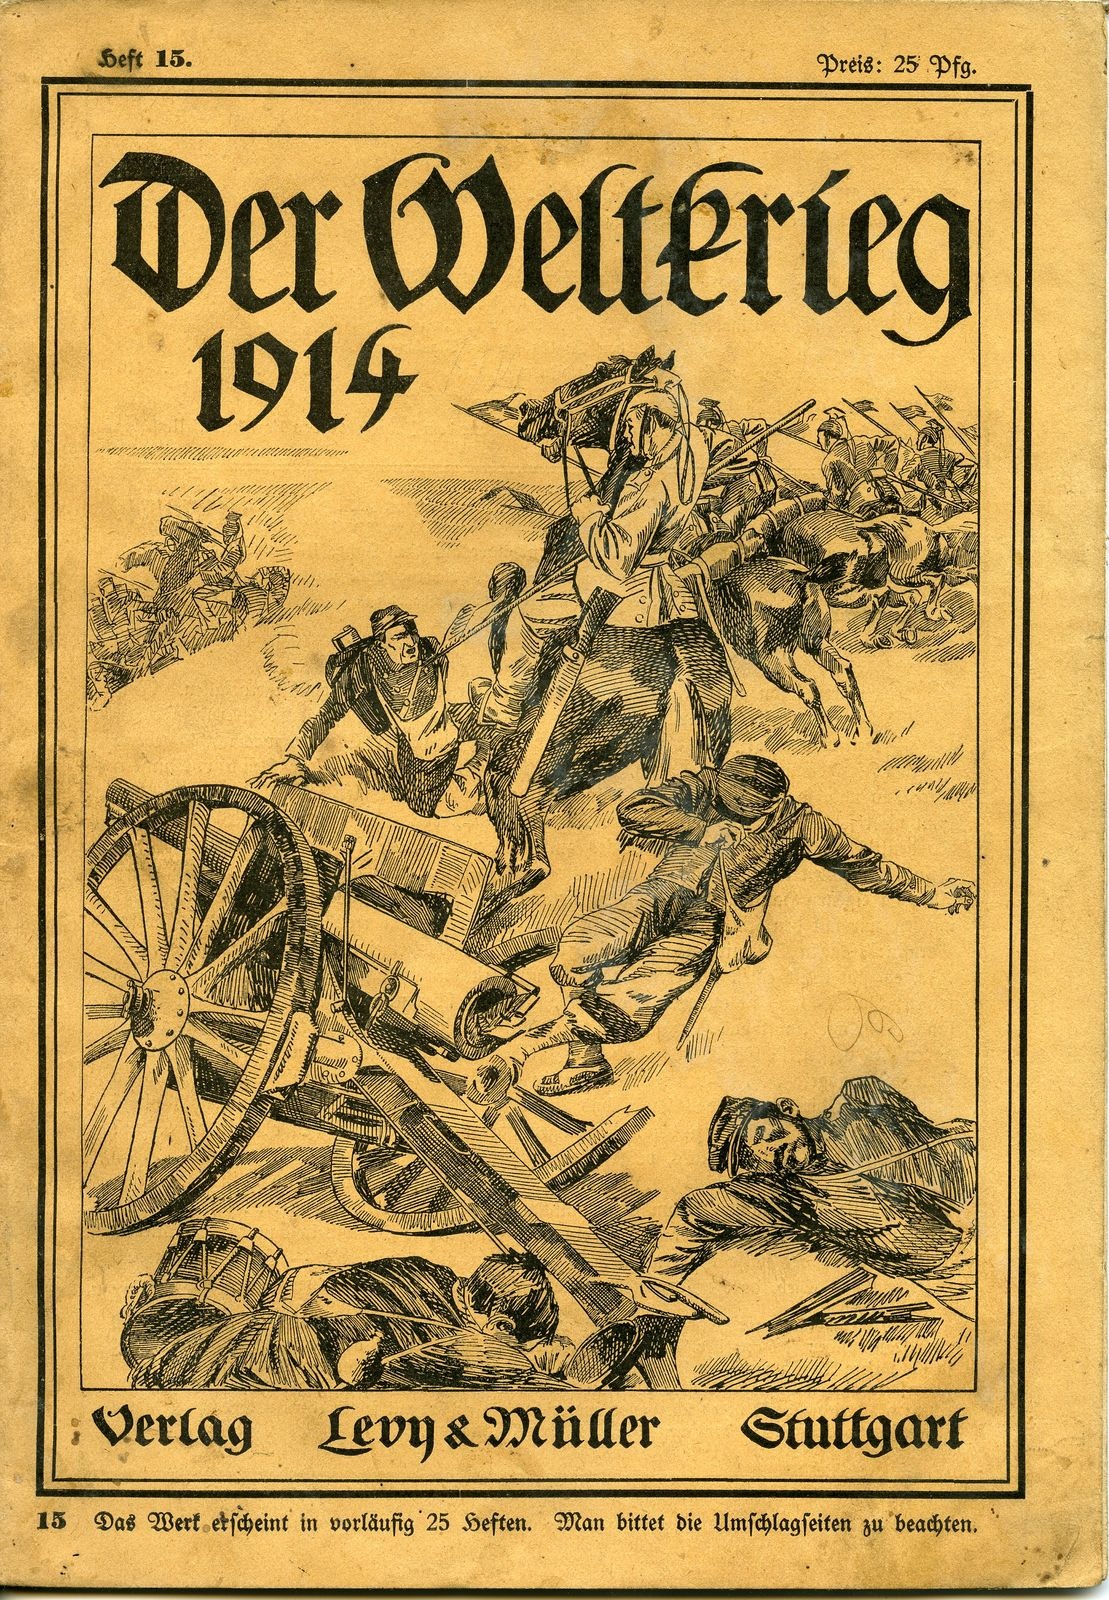 Zeitschrift "Der Weltkrieg 1914", Heft 15 (Historisches Museum der Pfalz, Speyer CC BY)